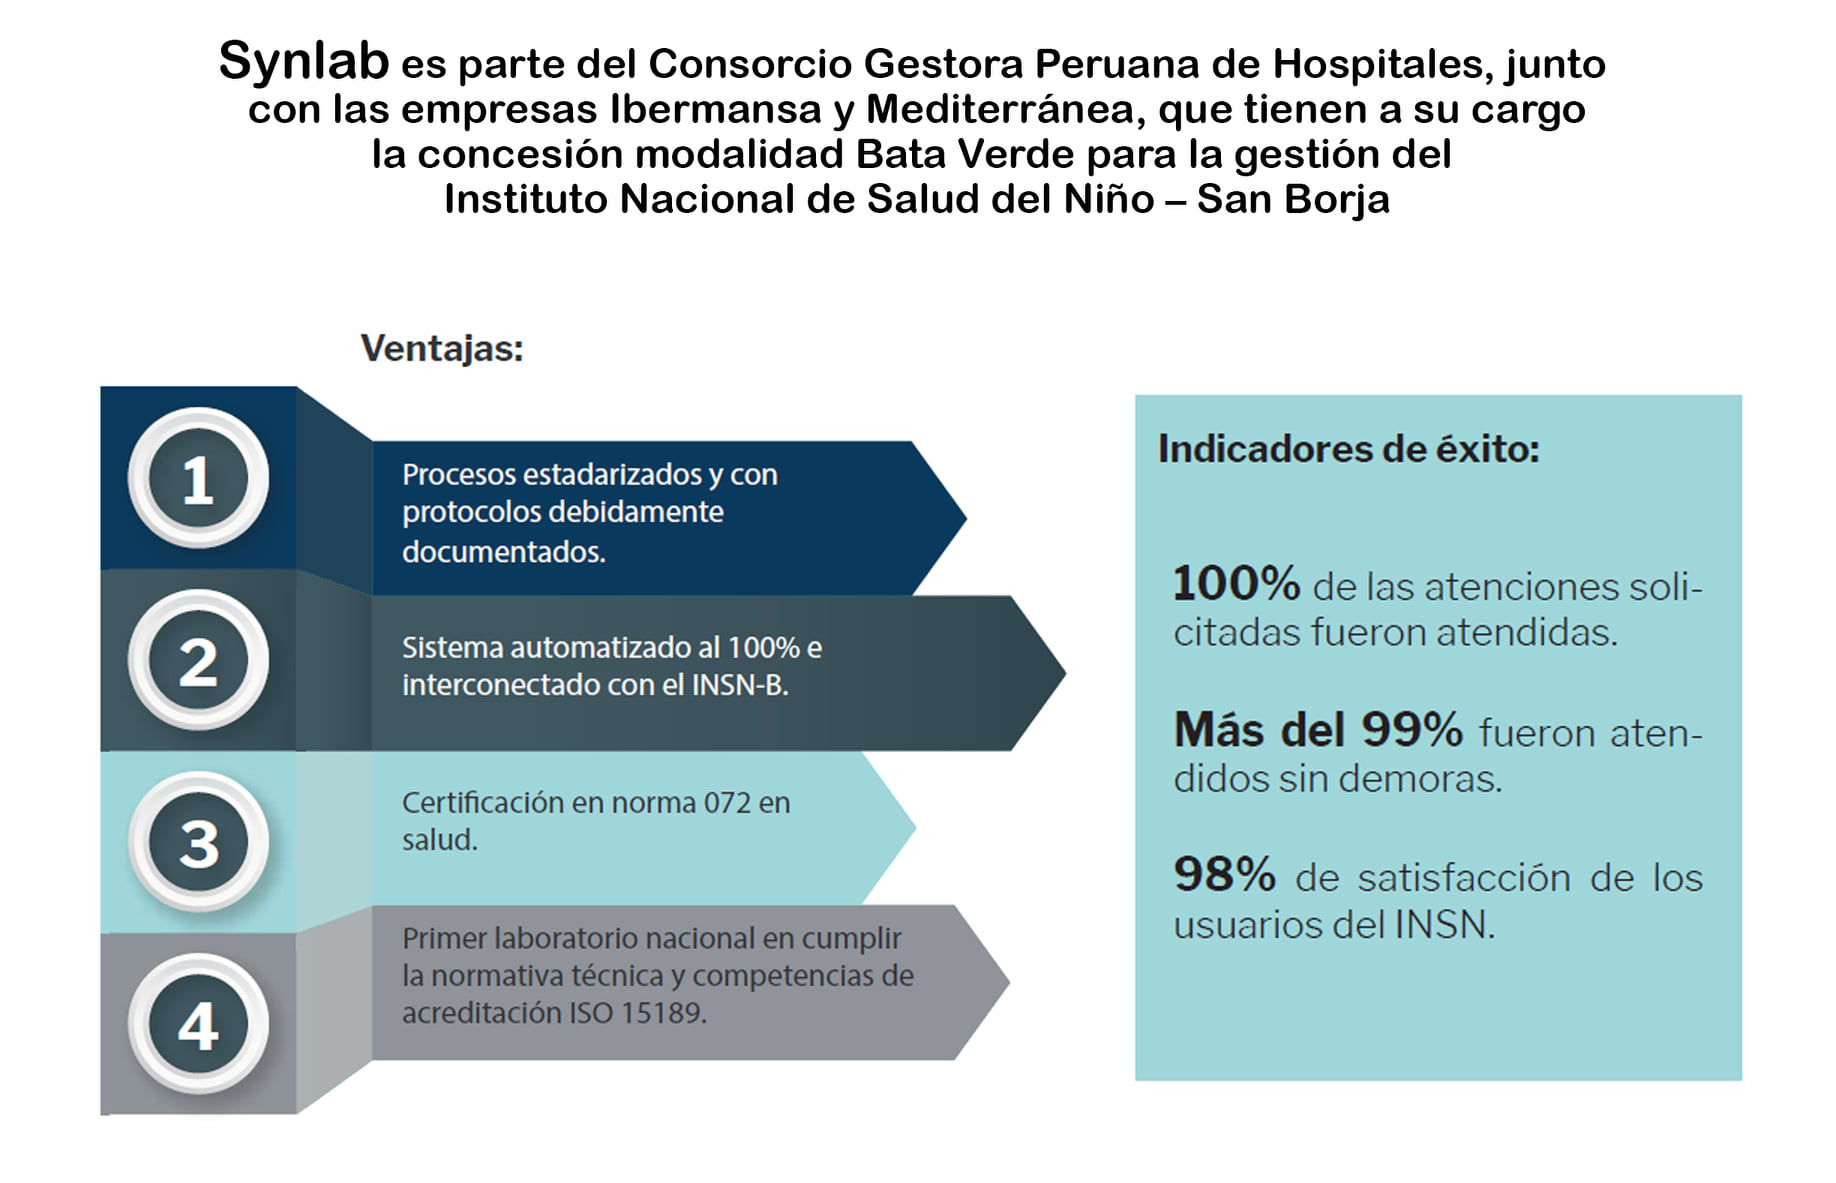 Synlab gestiona el laboratorio de patología clínica de la concesión modalidad Bata Verde del INSN – San Borja